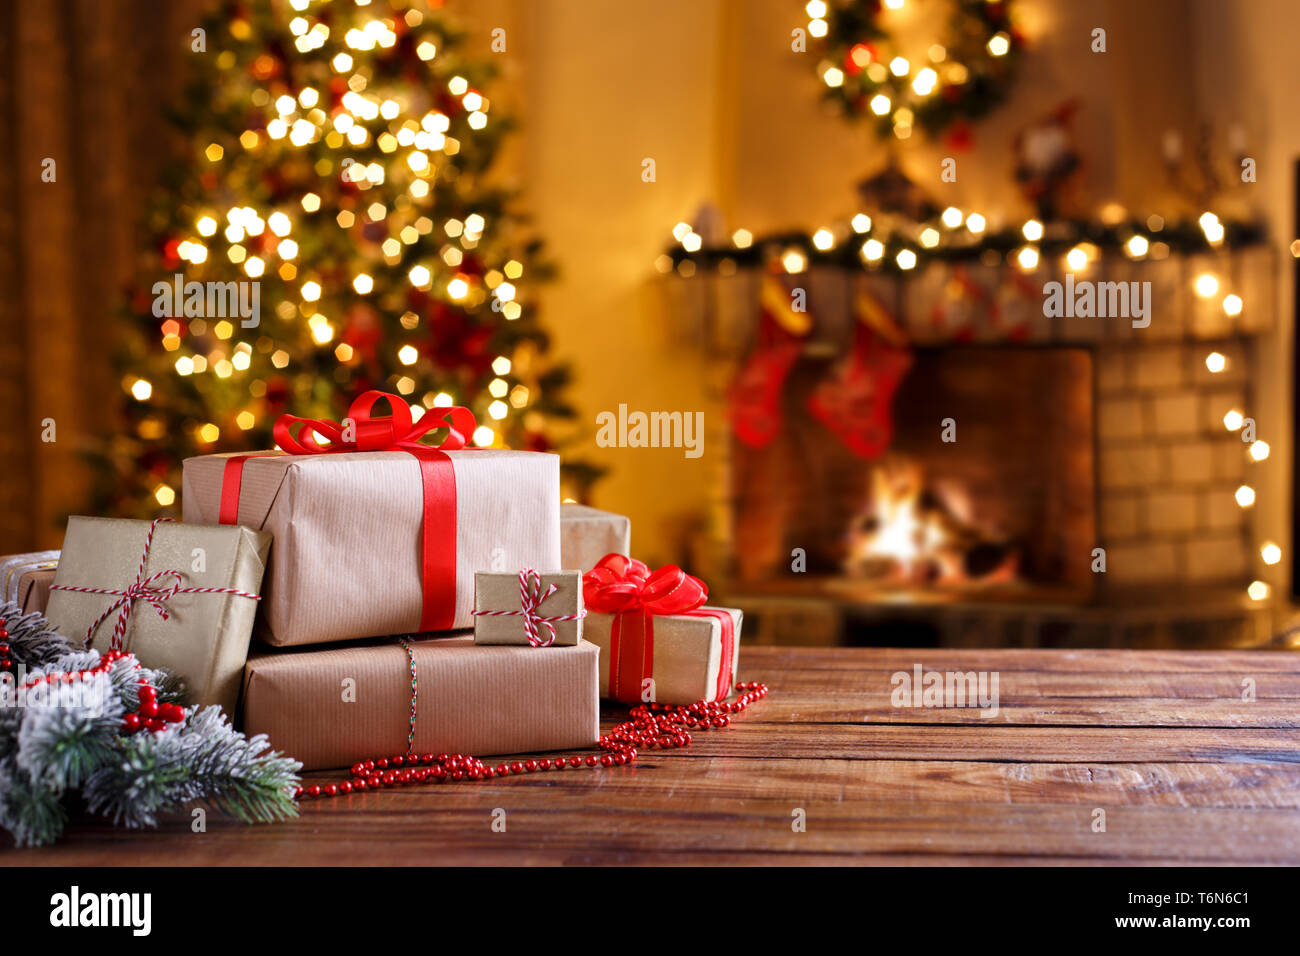 Weihnachtsgeschenke auf hölzernen Tisch Stockfoto